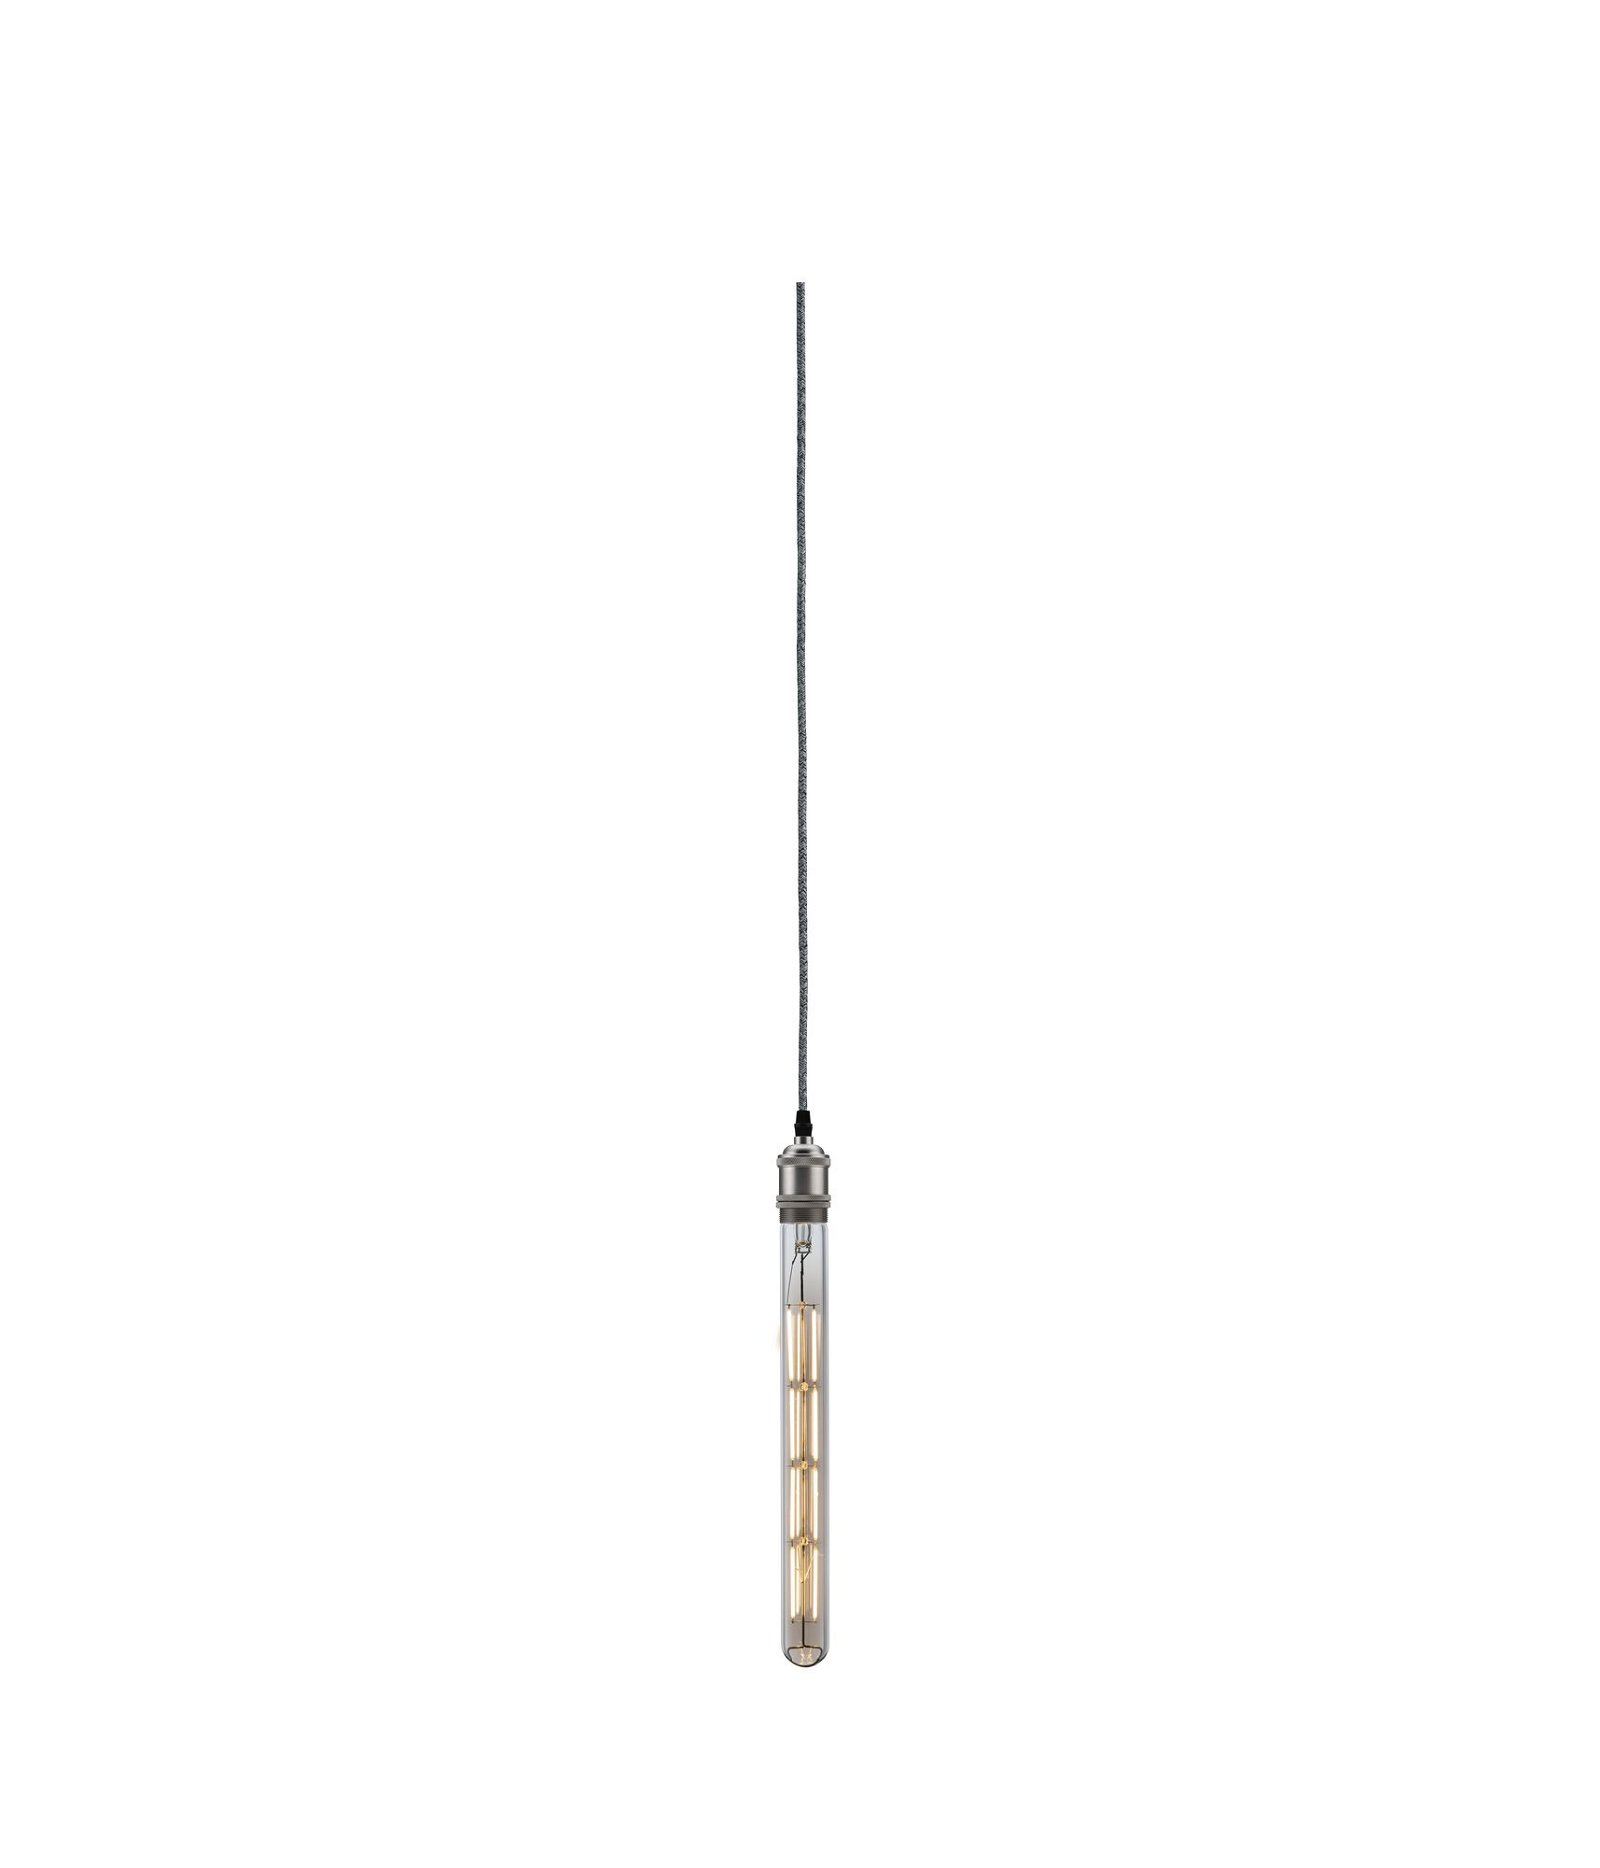 Neordic Hanglamp Eldar incl. stekker E27 max. 20W Grijs/Nikkel dimbaar Metaal